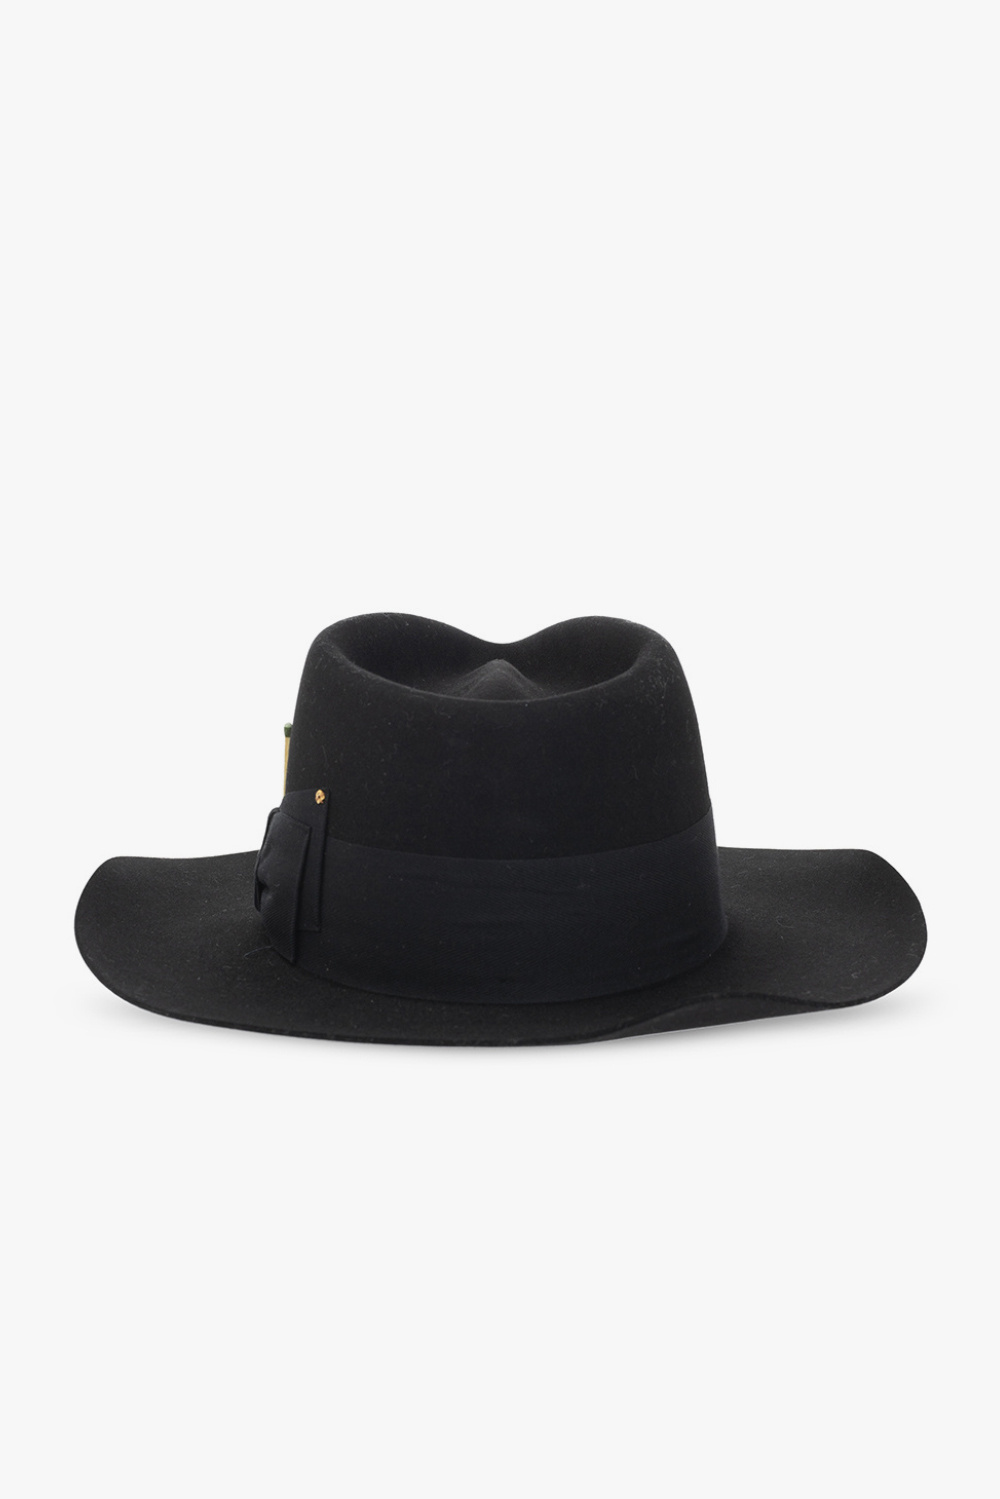 Nick Fouquet ‘Tuck’ felt BALANCE hat